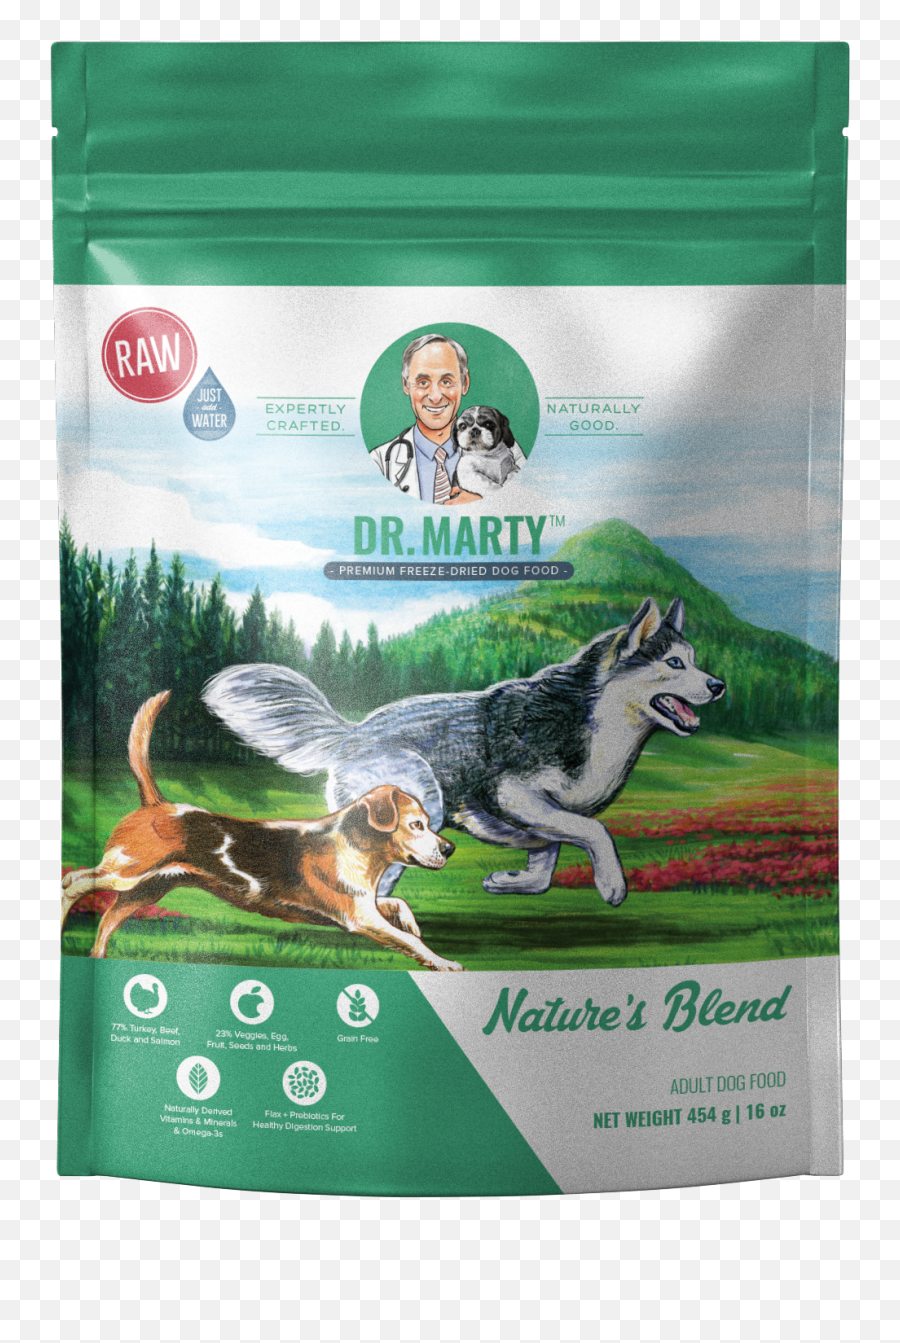 Retriever Dog Food - Dr Marty Dog Food Emoji,Puppy Dog Eyes Emoticon